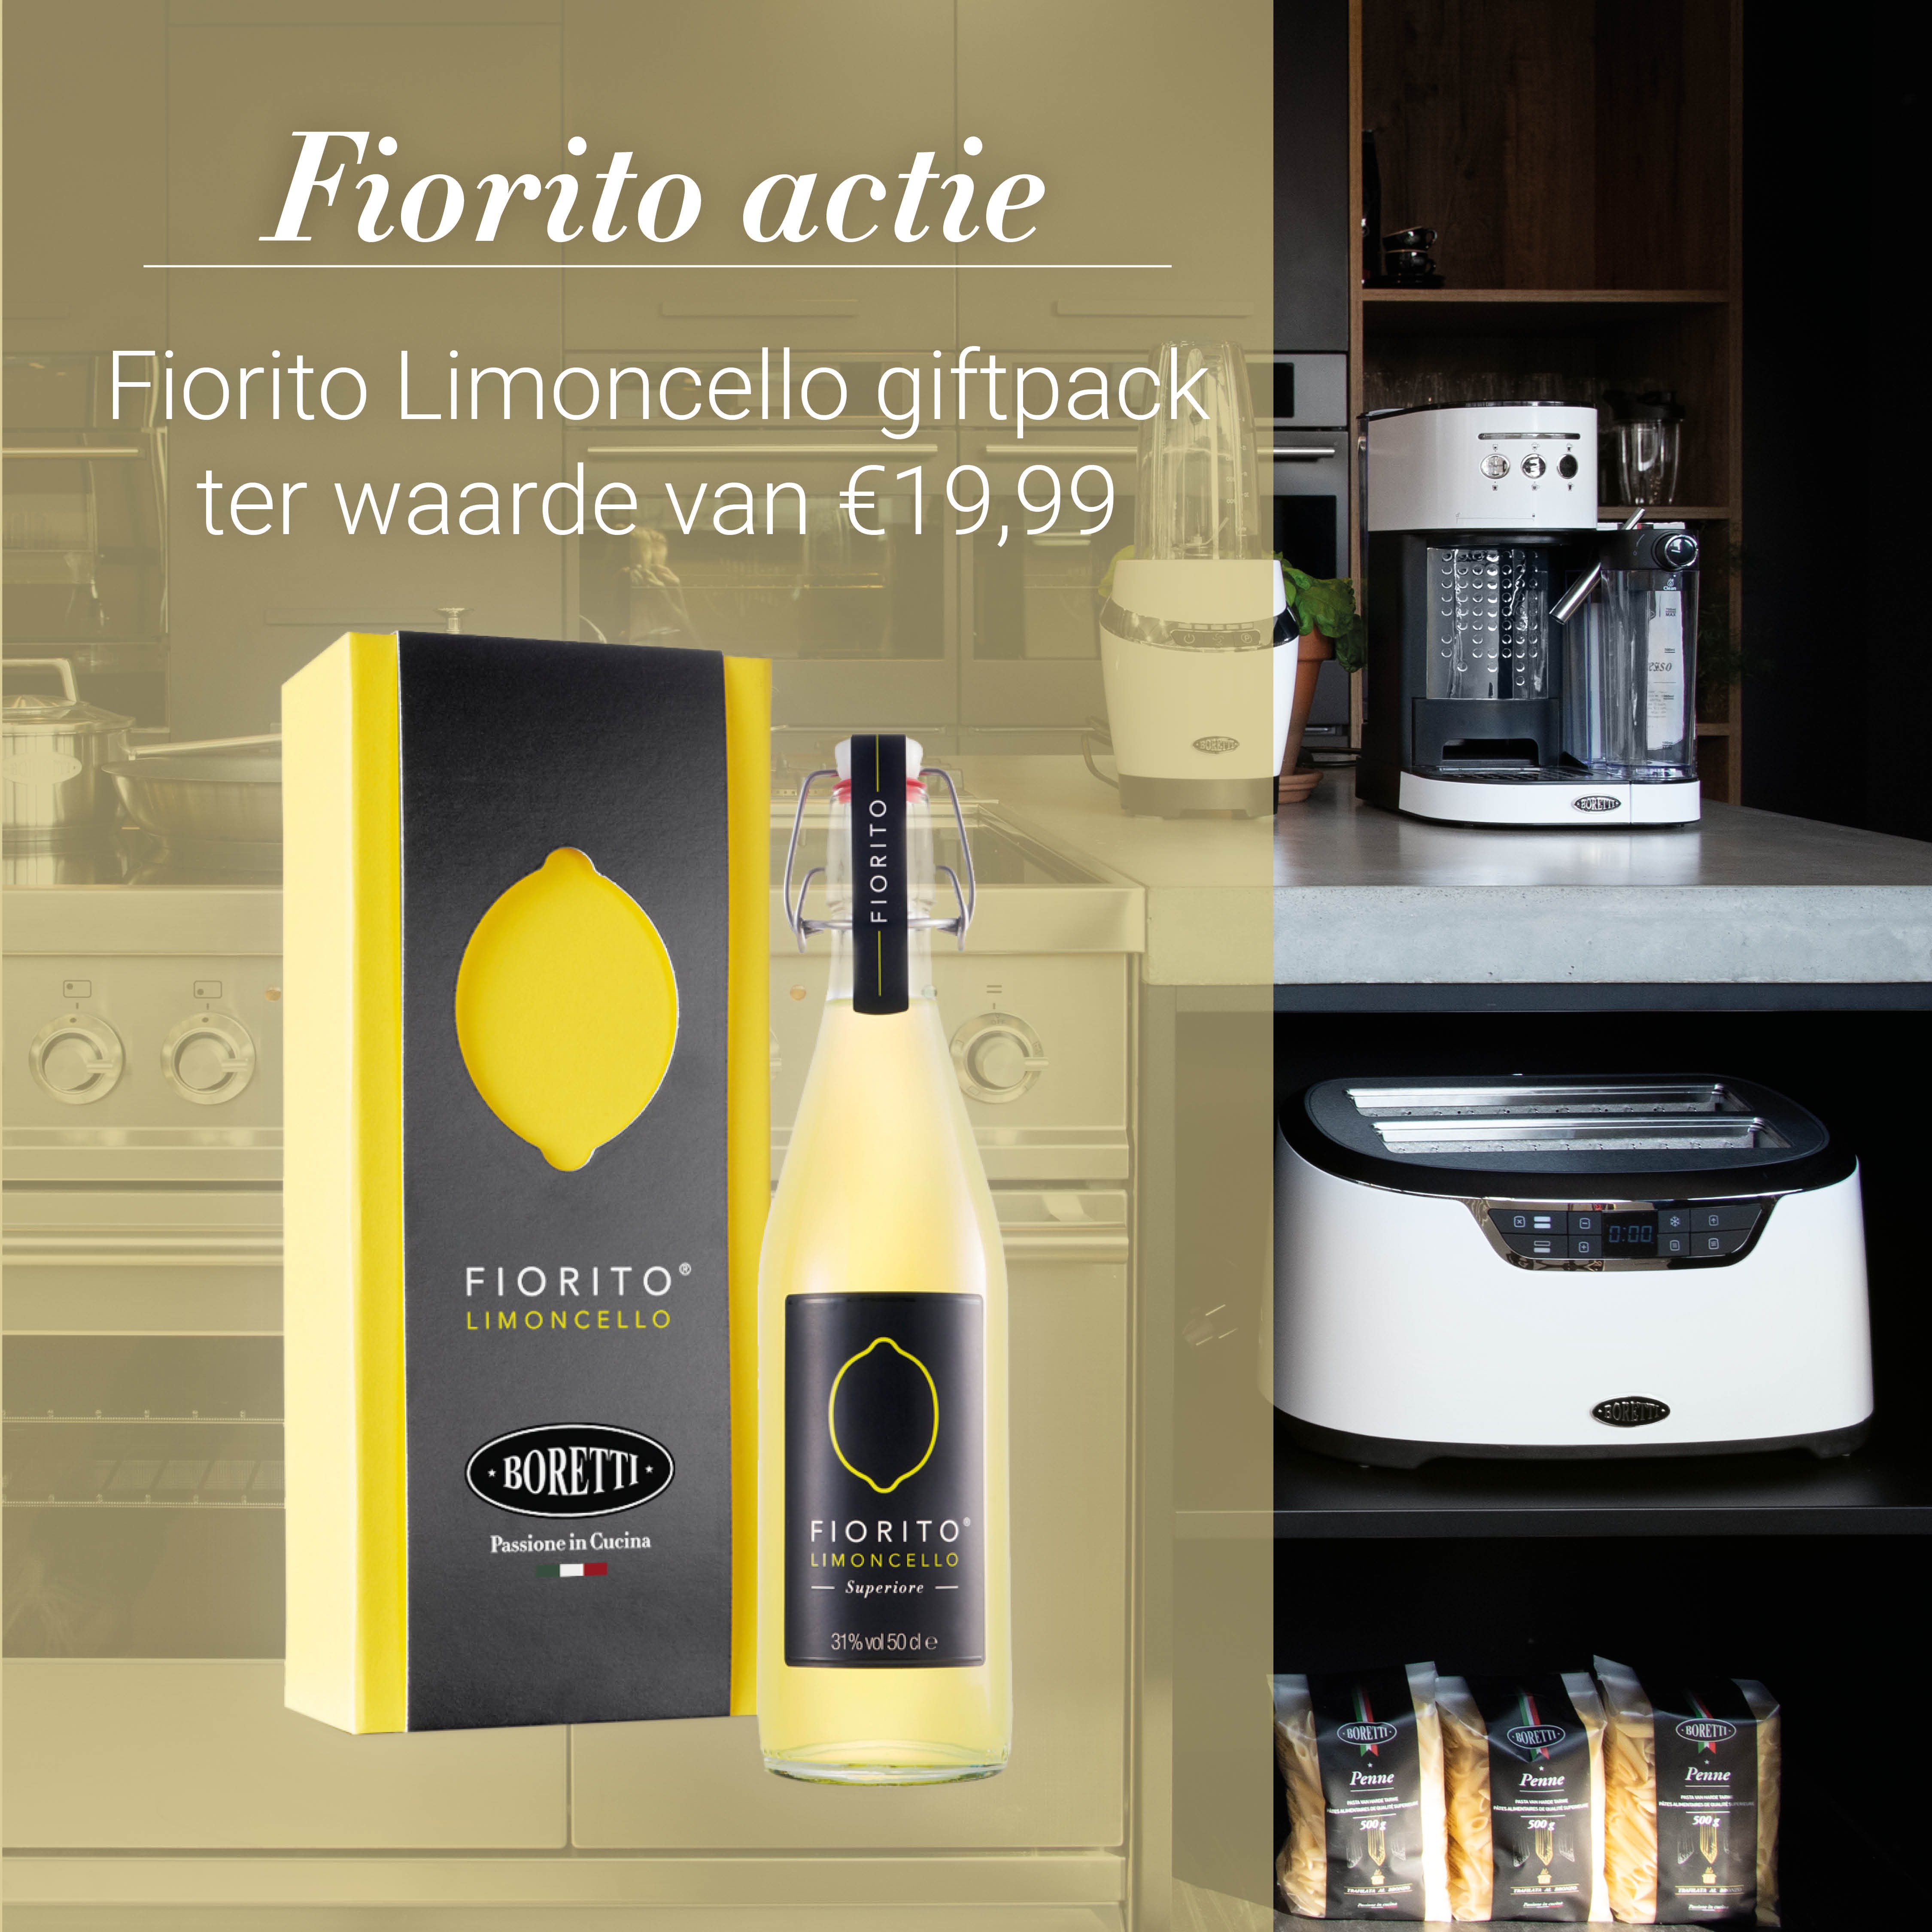 Gratis Fiorito Limoncello bij aankoop van een Boretii keukenapparaat